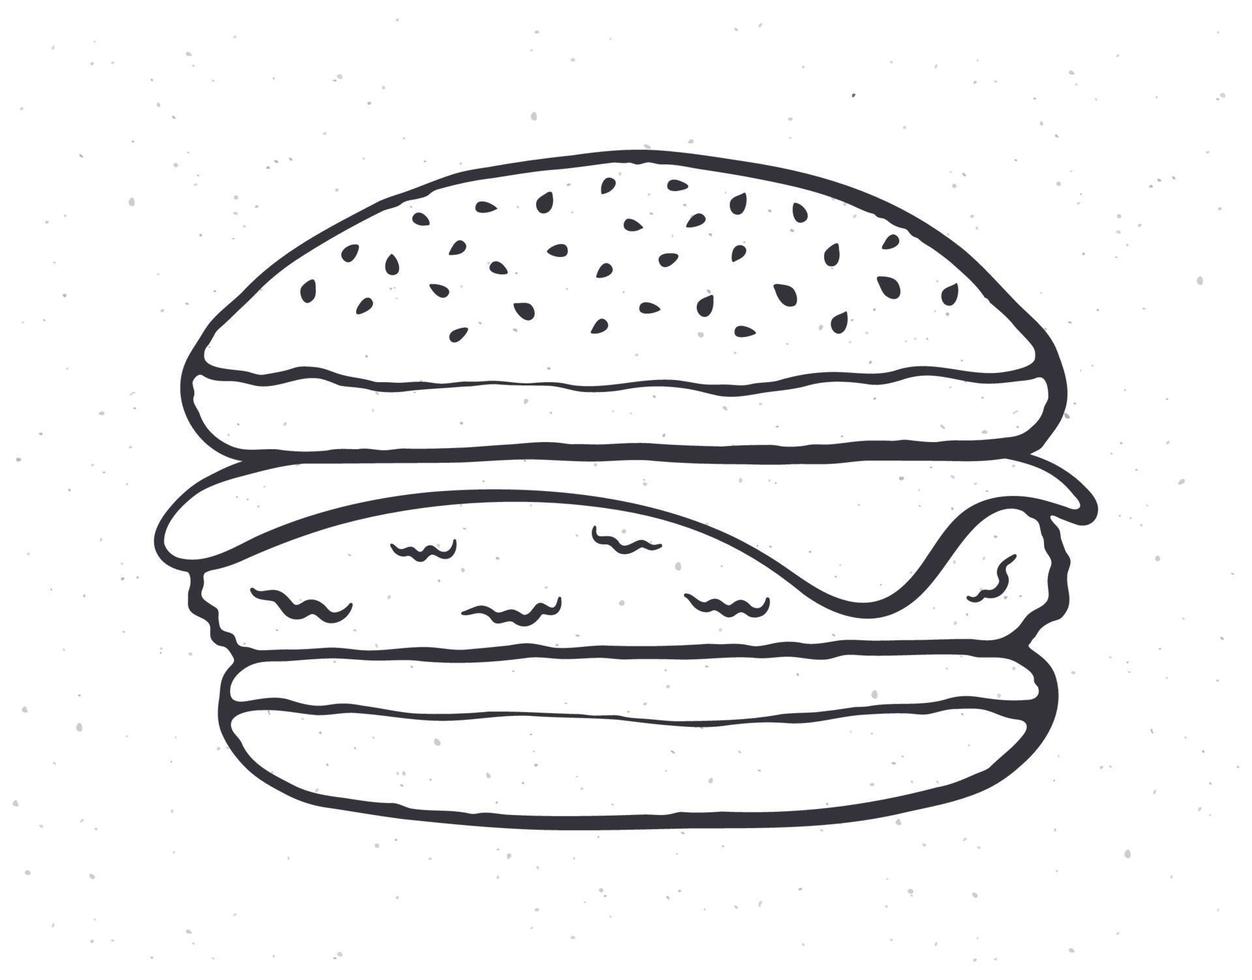 griffonnage illustration de cheeseburger vecteur